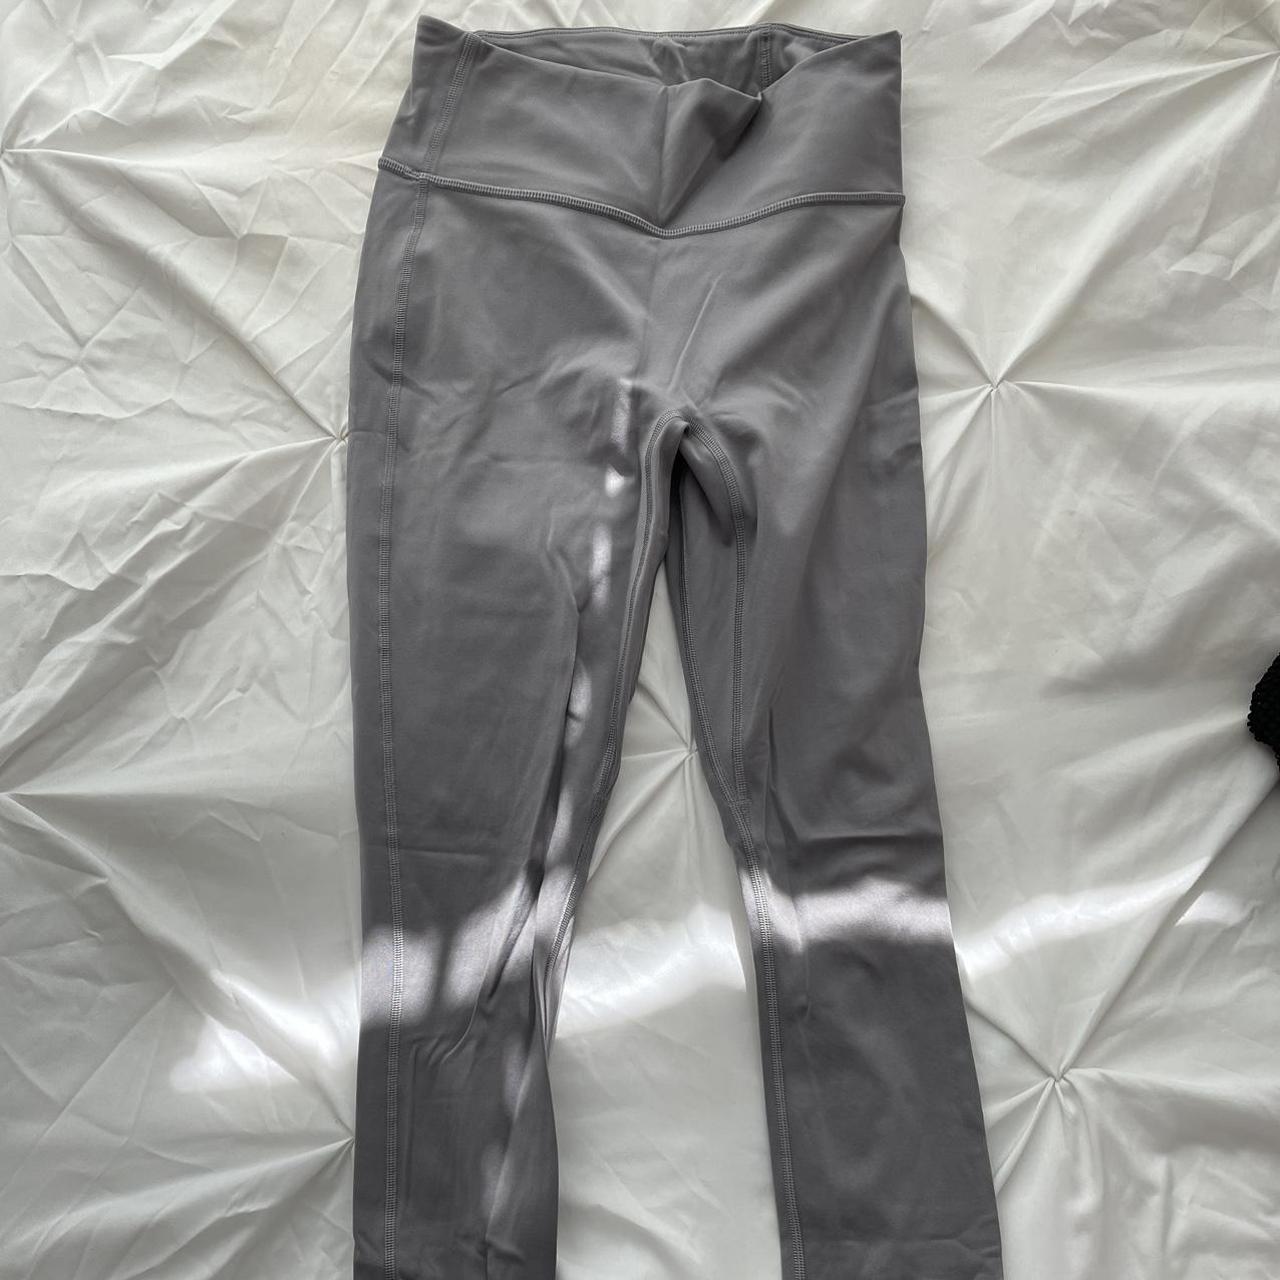 Gray fabletics leggings worn maybe twice size - Depop